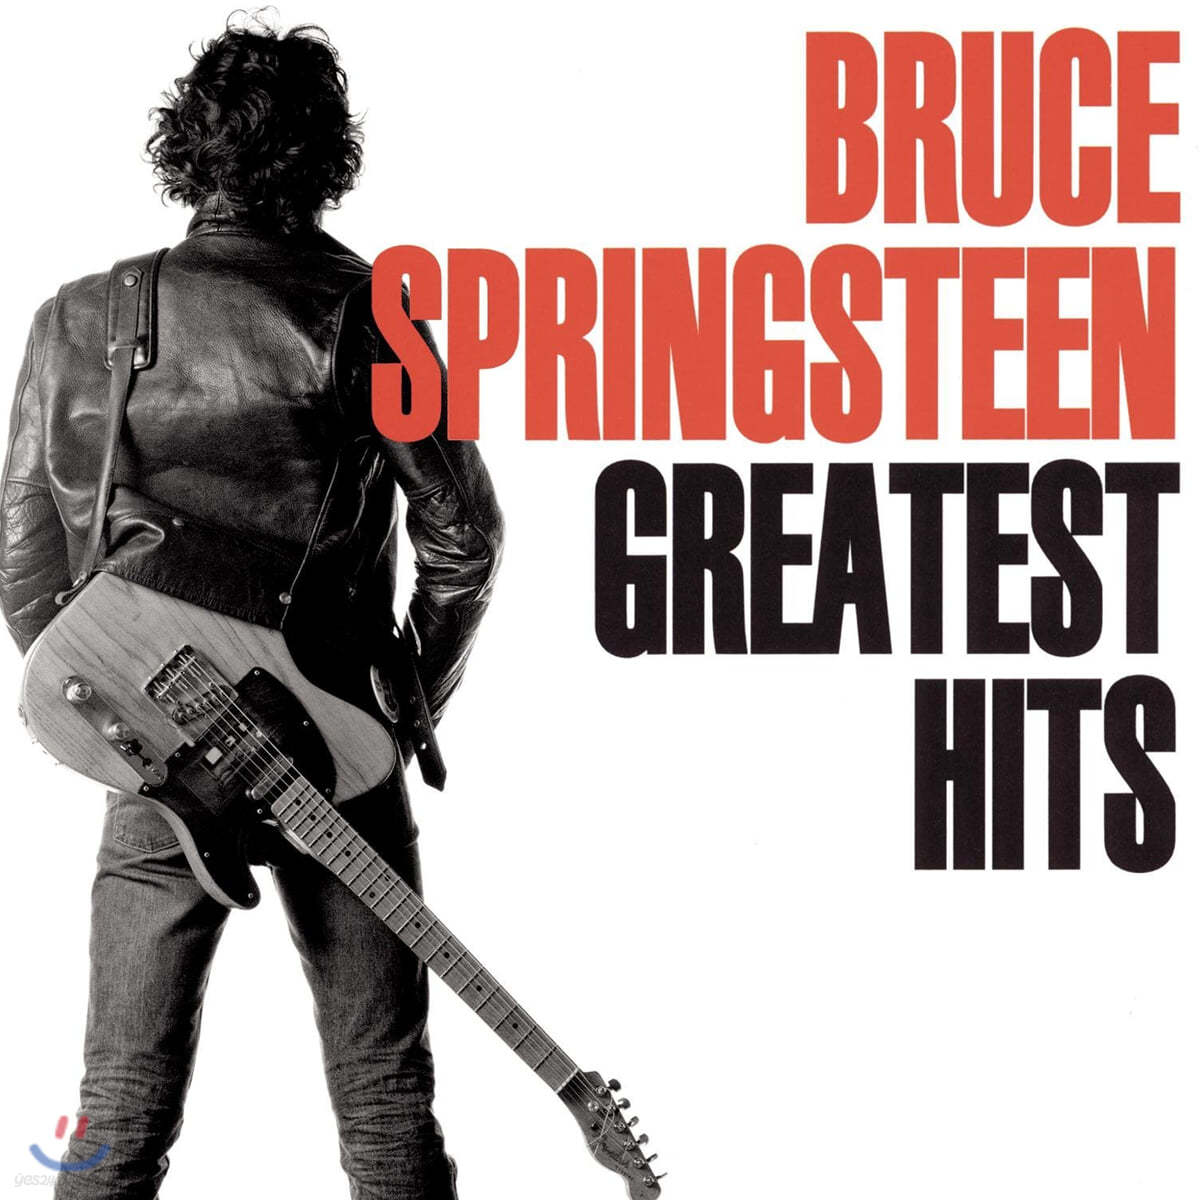 Bruce Springsteen - Greatest Hits 브루스 스프링스틴 베스트 앨범